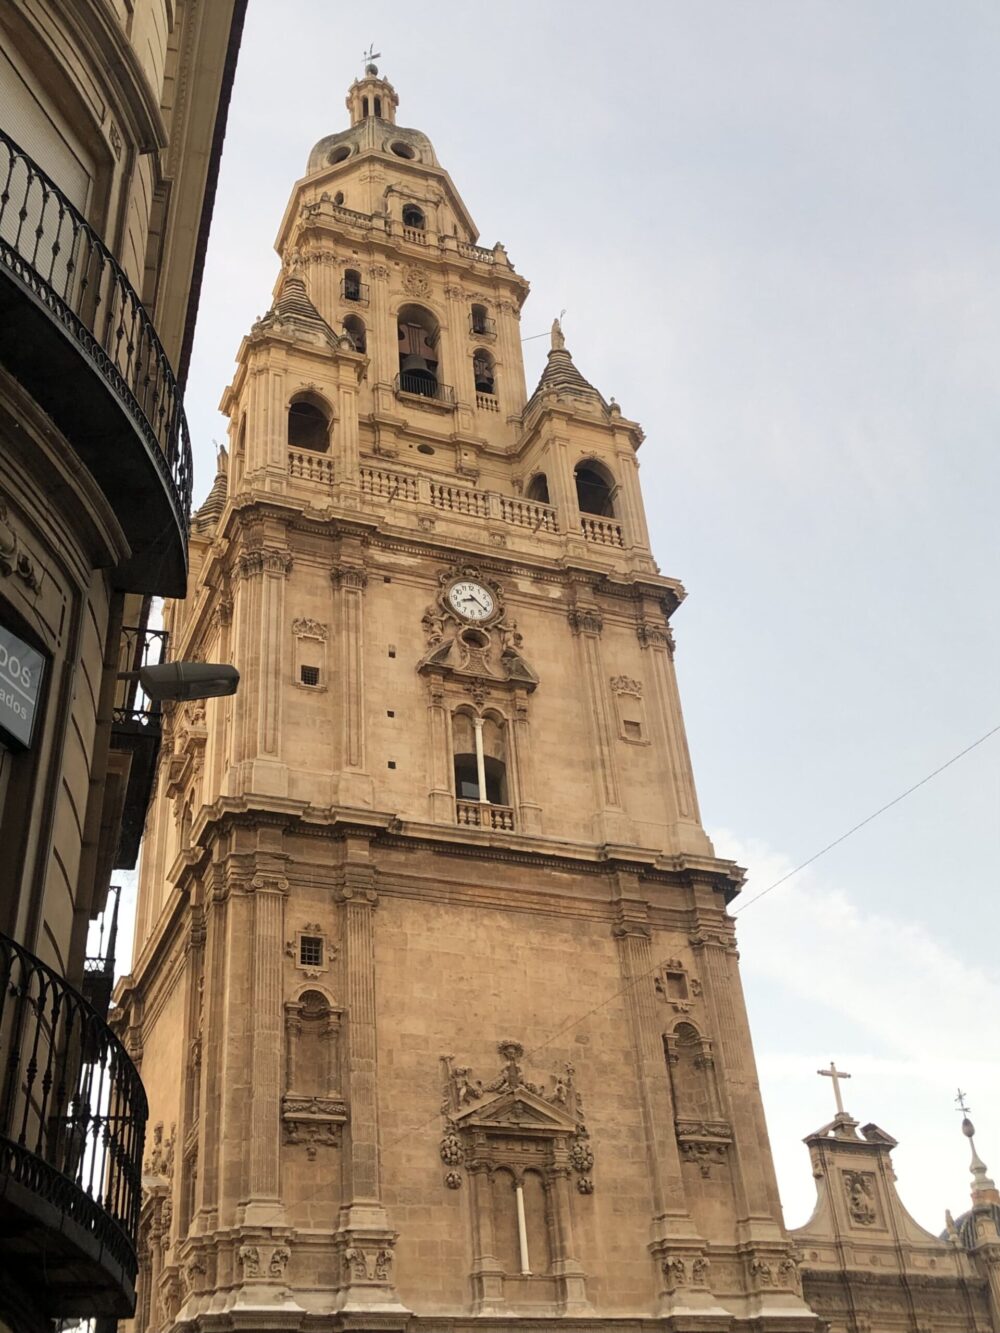 Historia de la Torre de La Catedral de Murcia